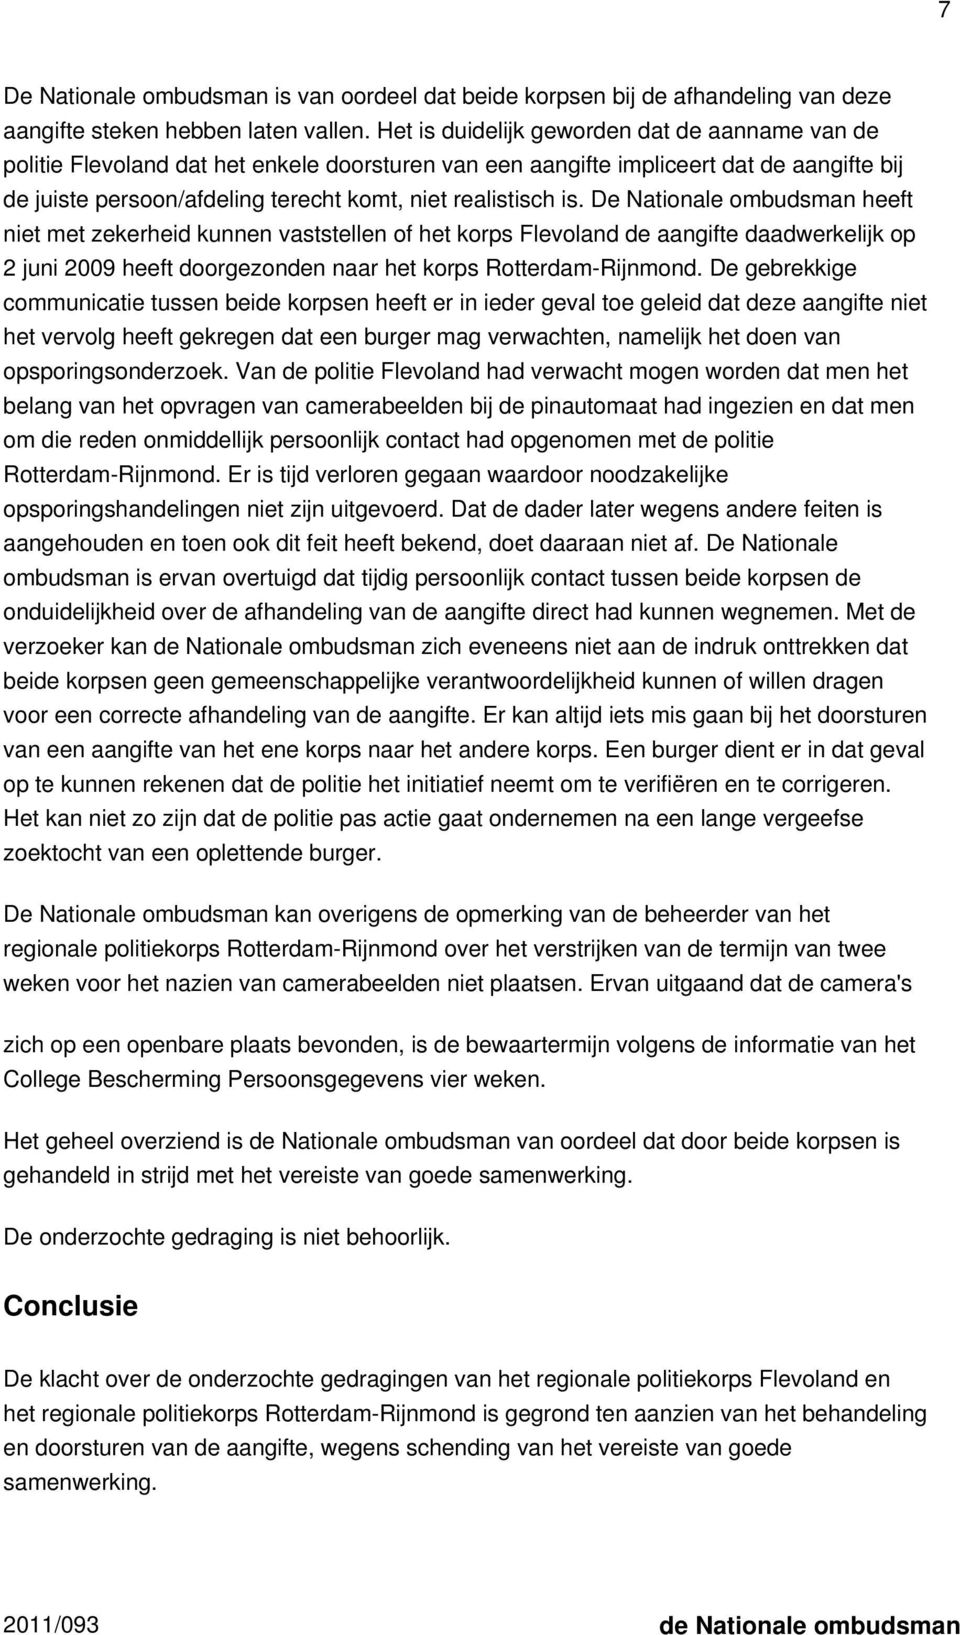 is. De Nationale ombudsman heeft niet met zekerheid kunnen vaststellen of het korps Flevoland de aangifte daadwerkelijk op 2 juni 2009 heeft doorgezonden naar het korps Rotterdam-Rijnmond.